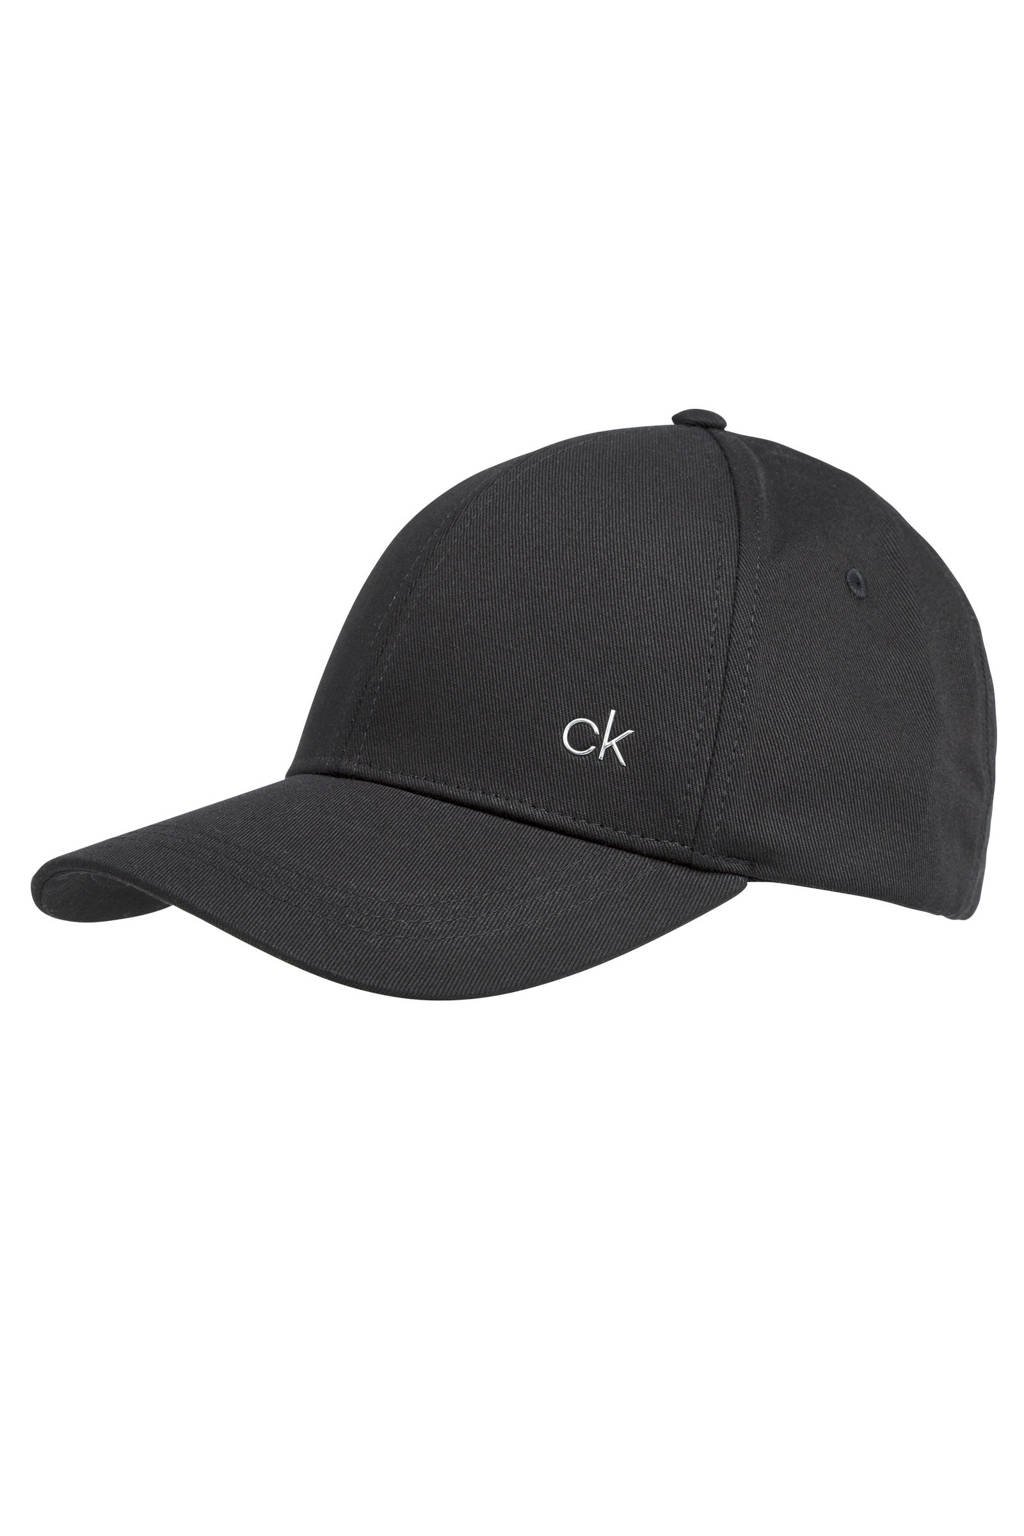 Calvin Klein pet met logo zwart